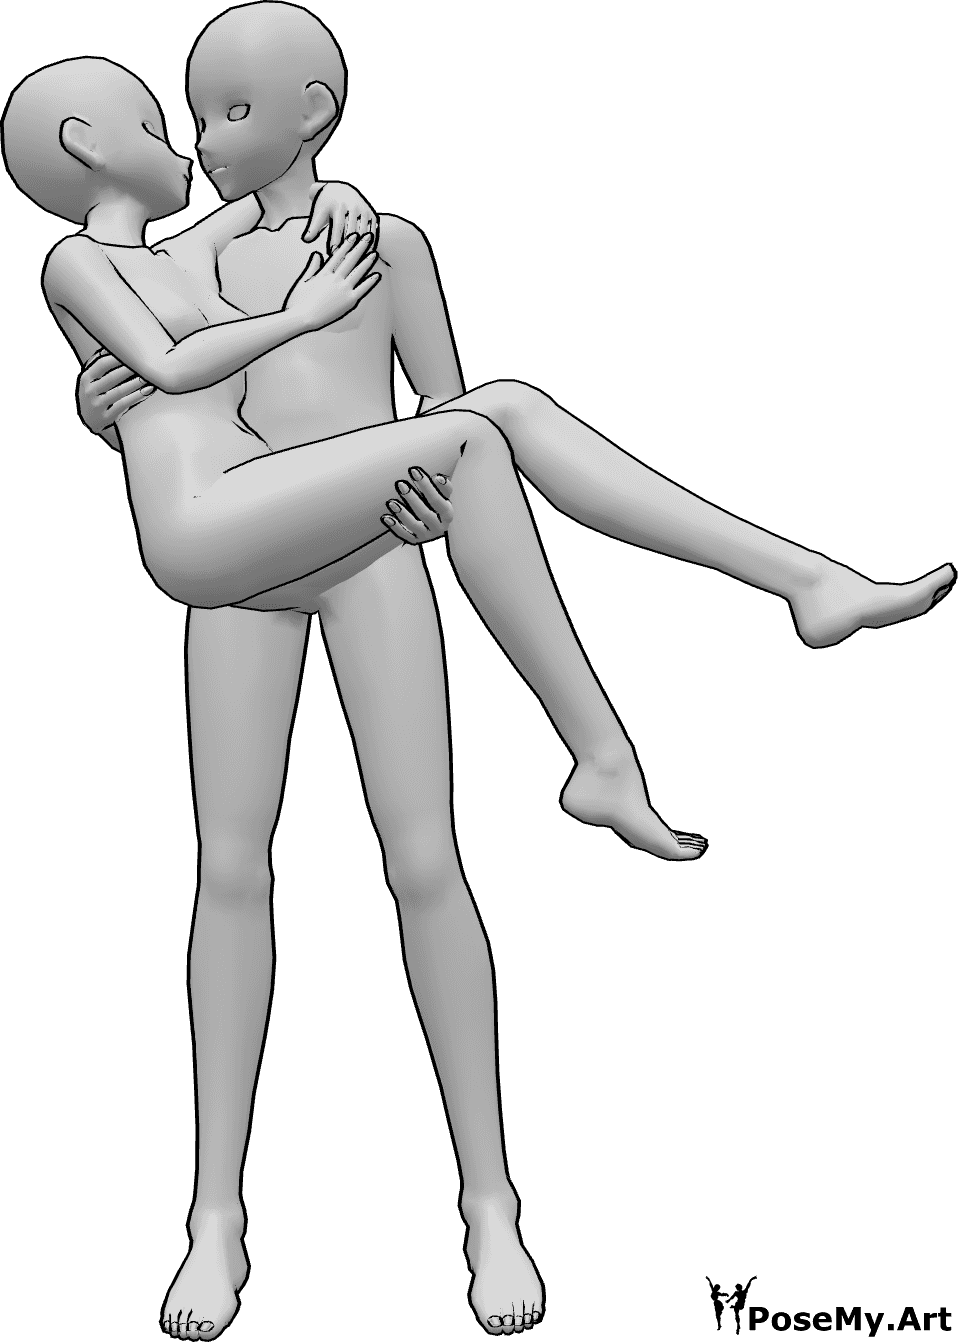 Riferimento alle pose- Anime che si baciano - Il maschio Anime tiene in braccio la femmina, si guardano e si baciano.